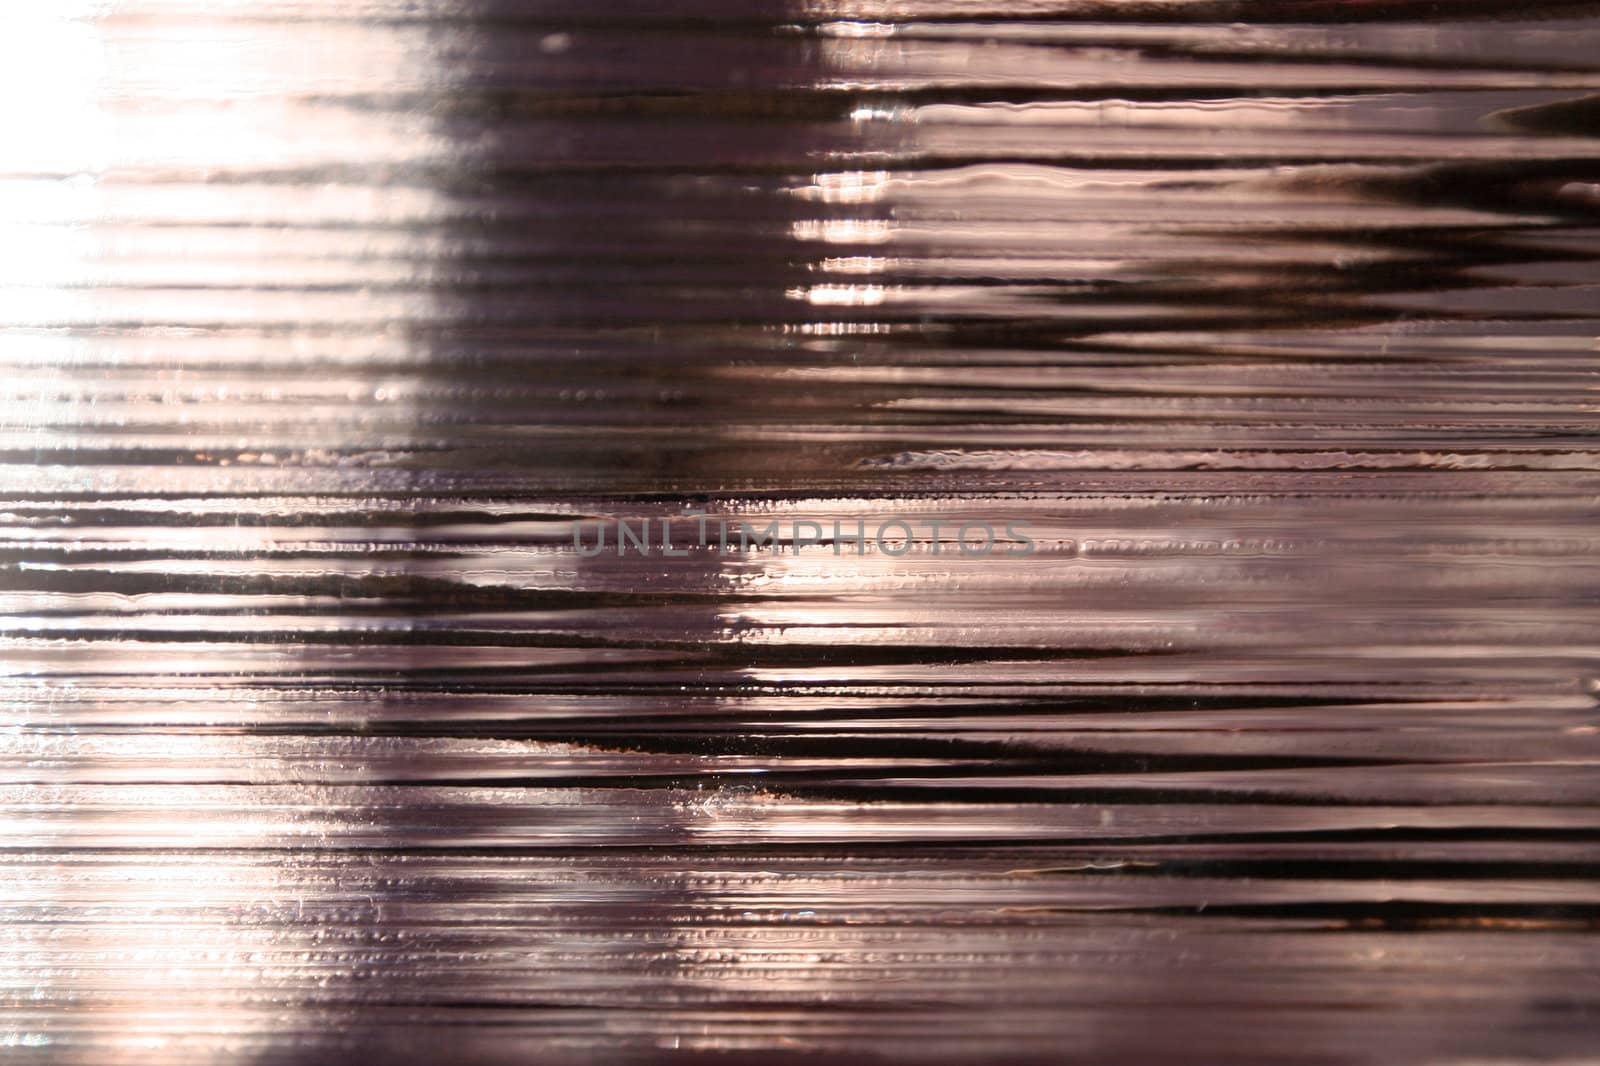 Wavy glass background by anterovium